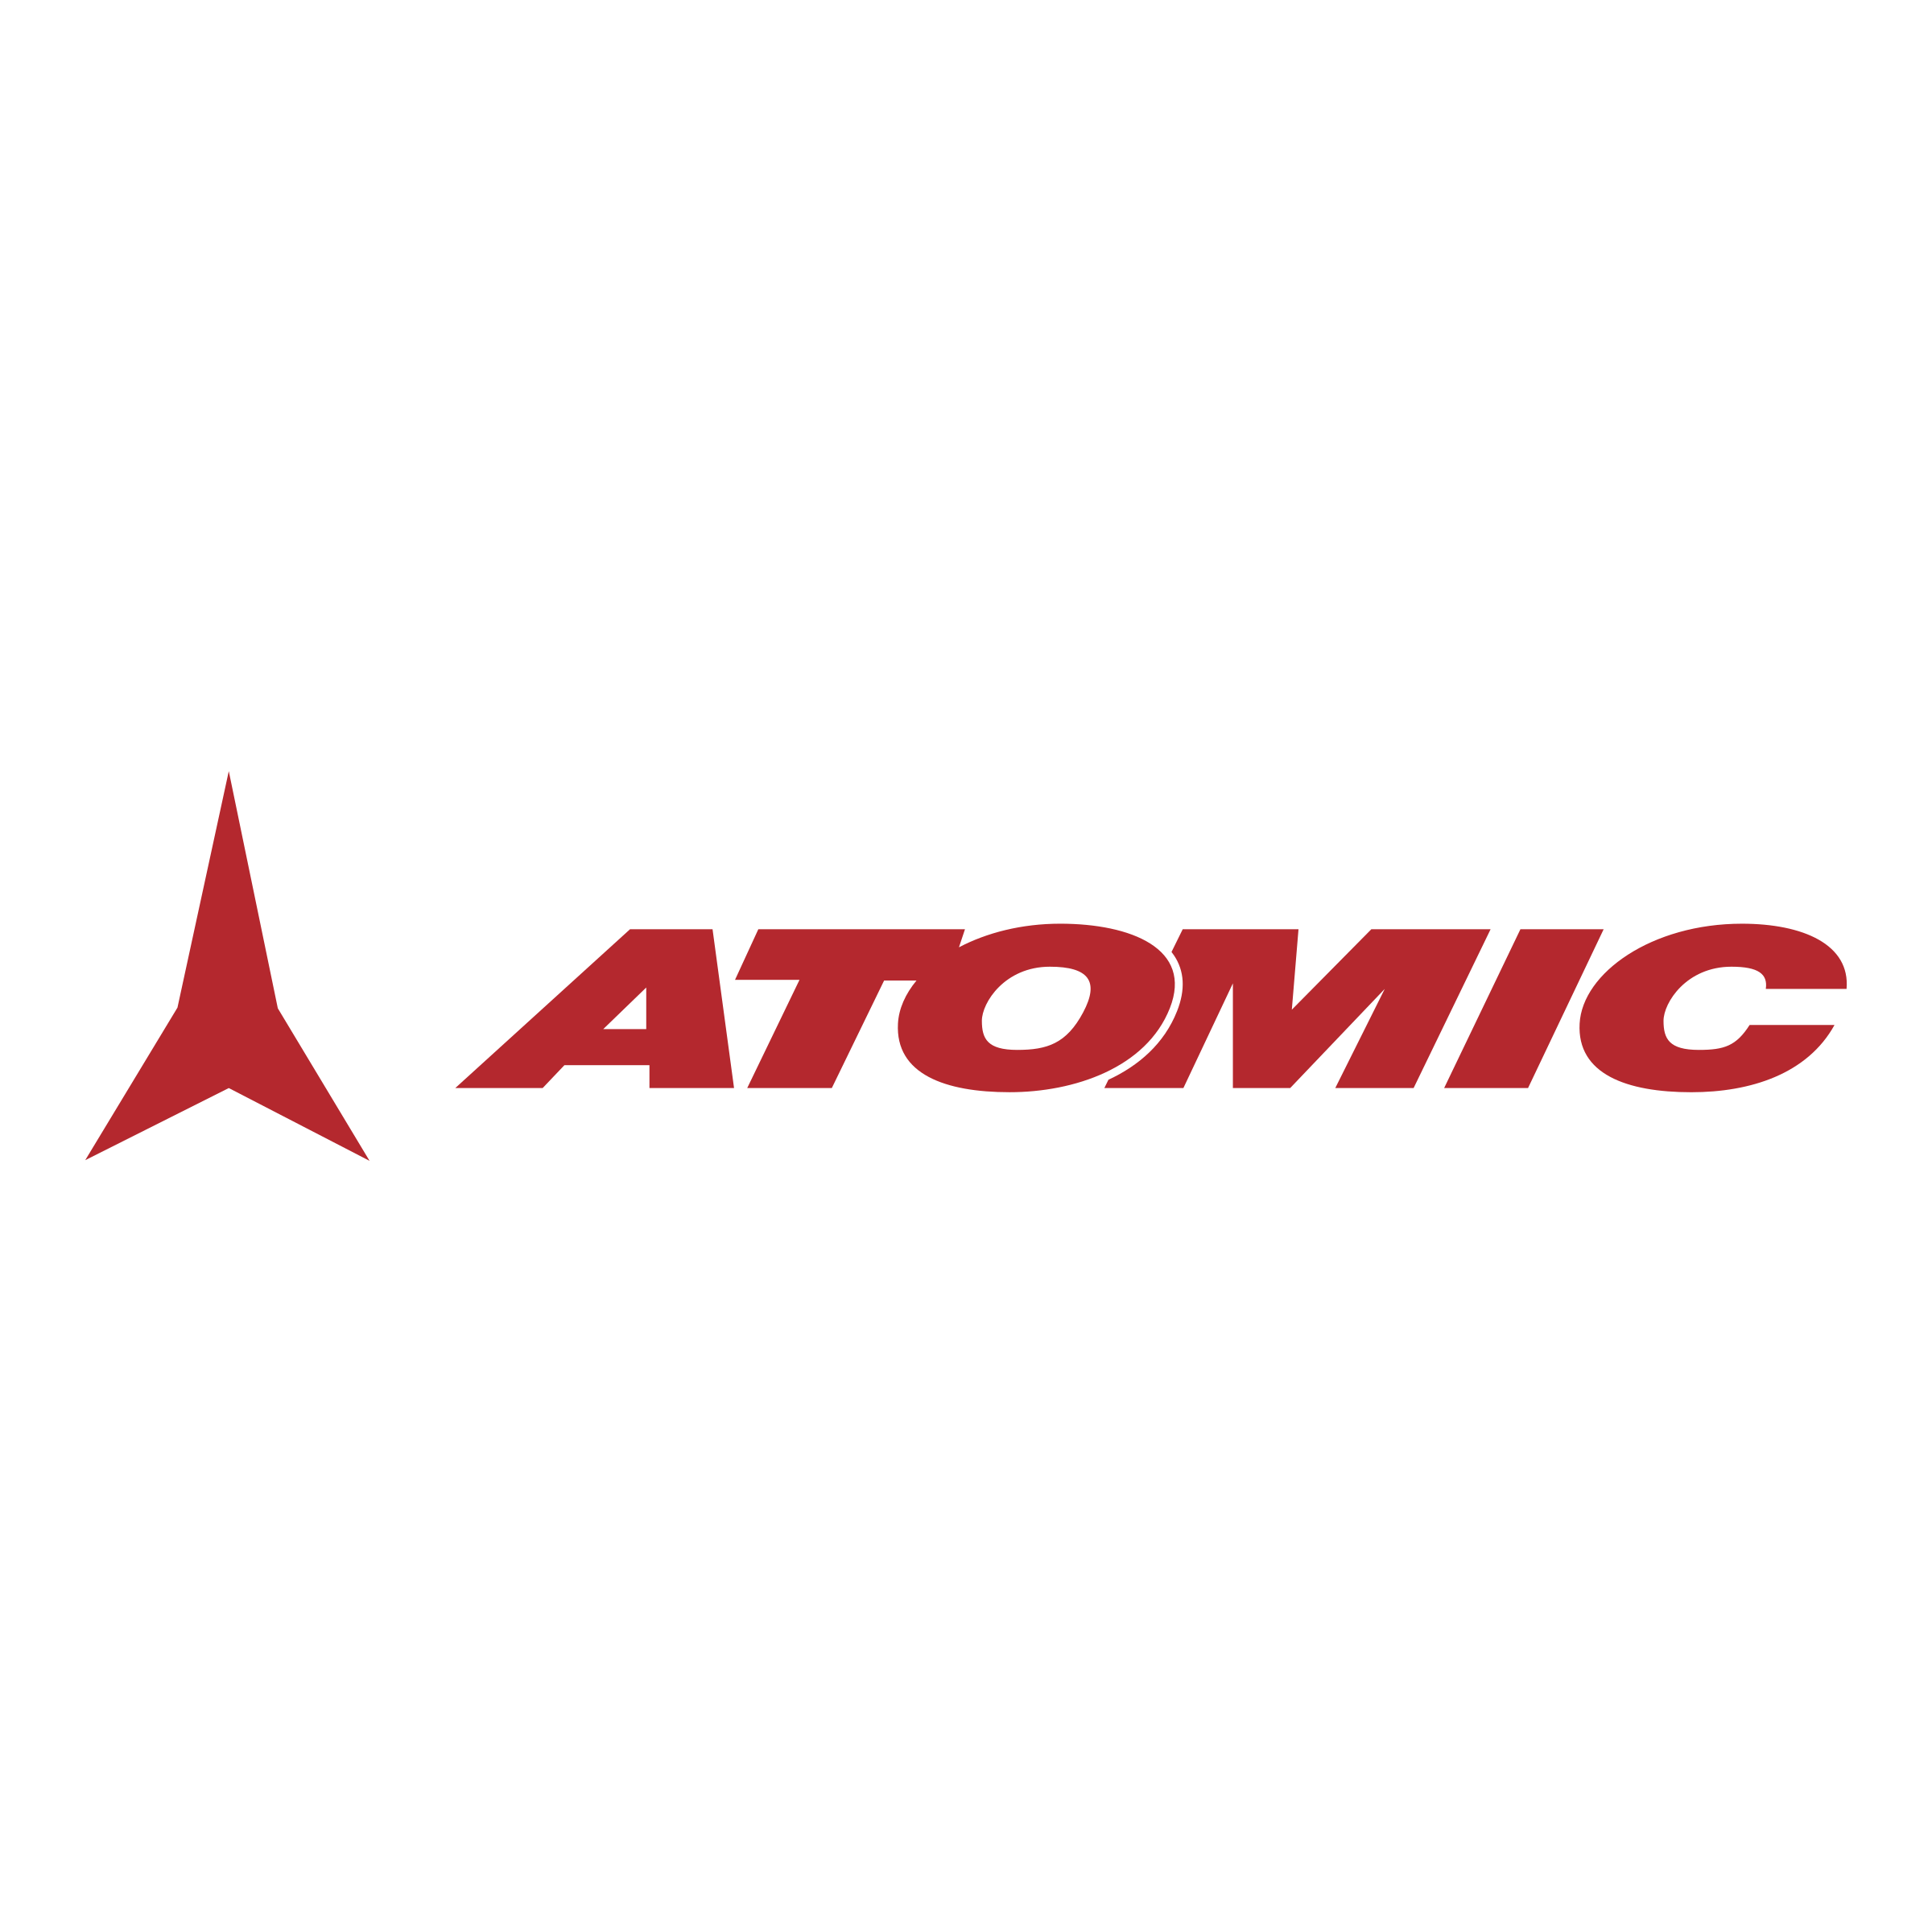 Black Star Logo, Atomic Nucle